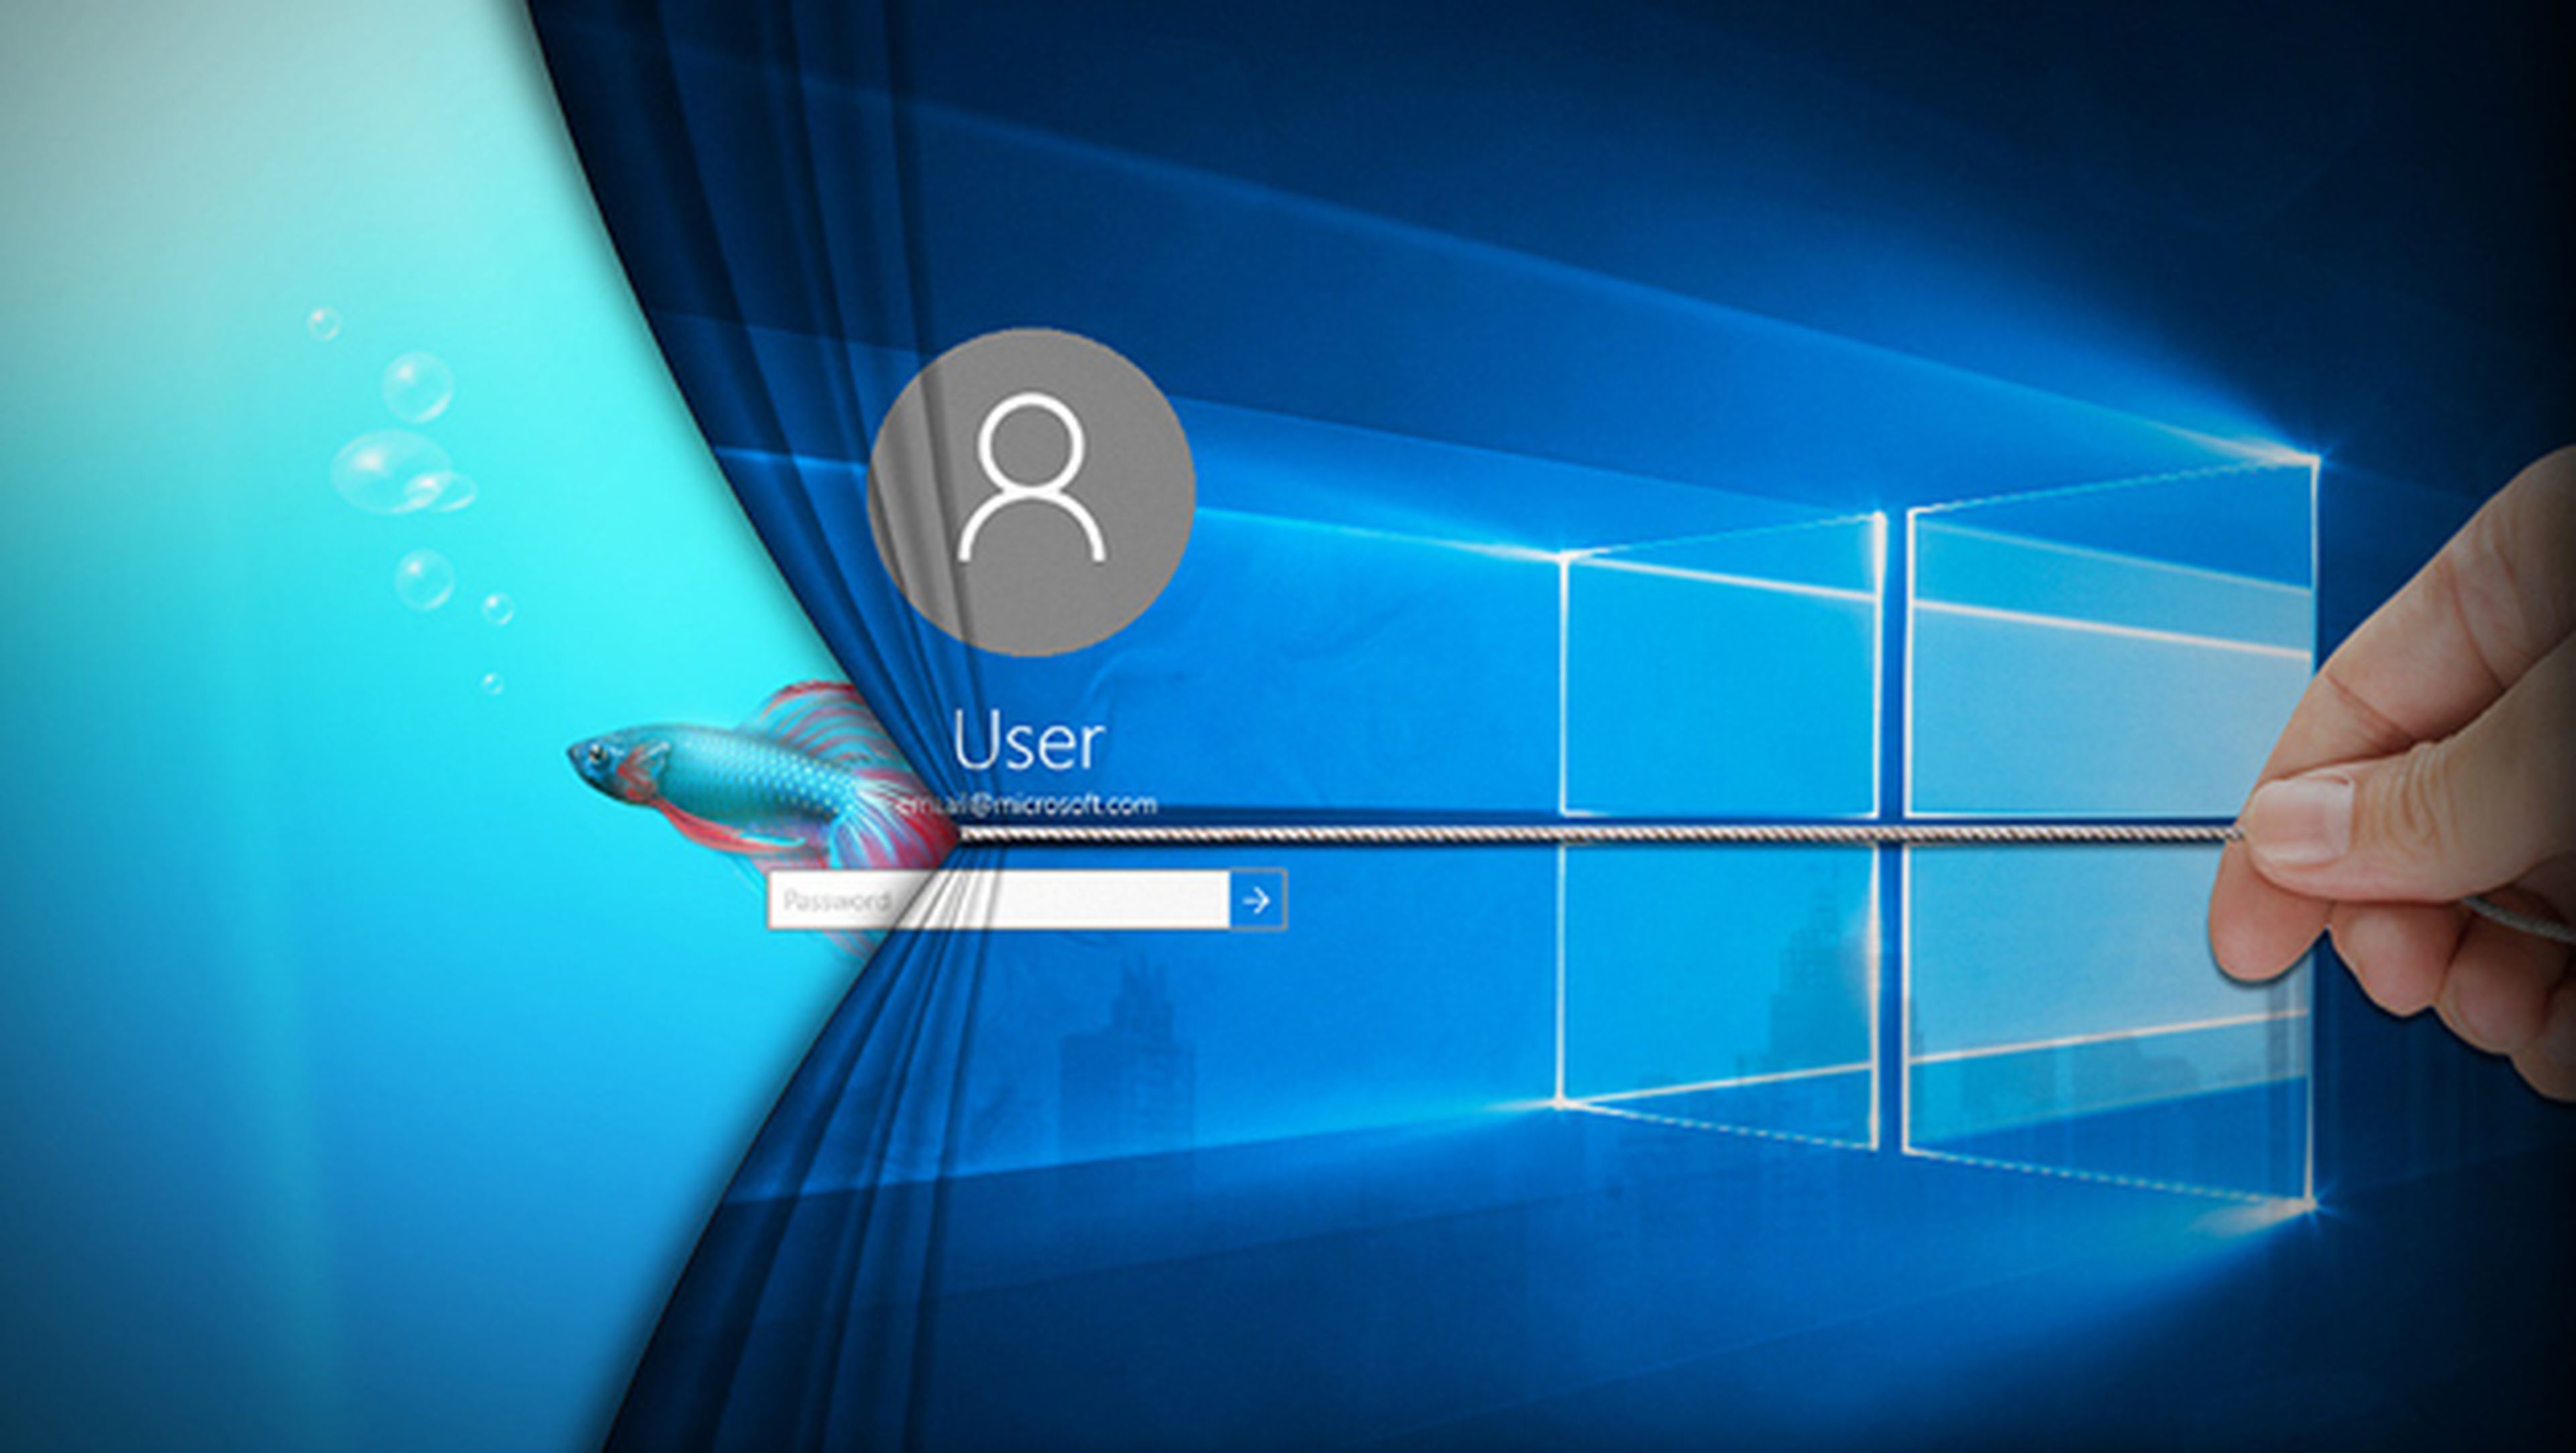 Cómo ocultar cuentas de usuario en Windows 10